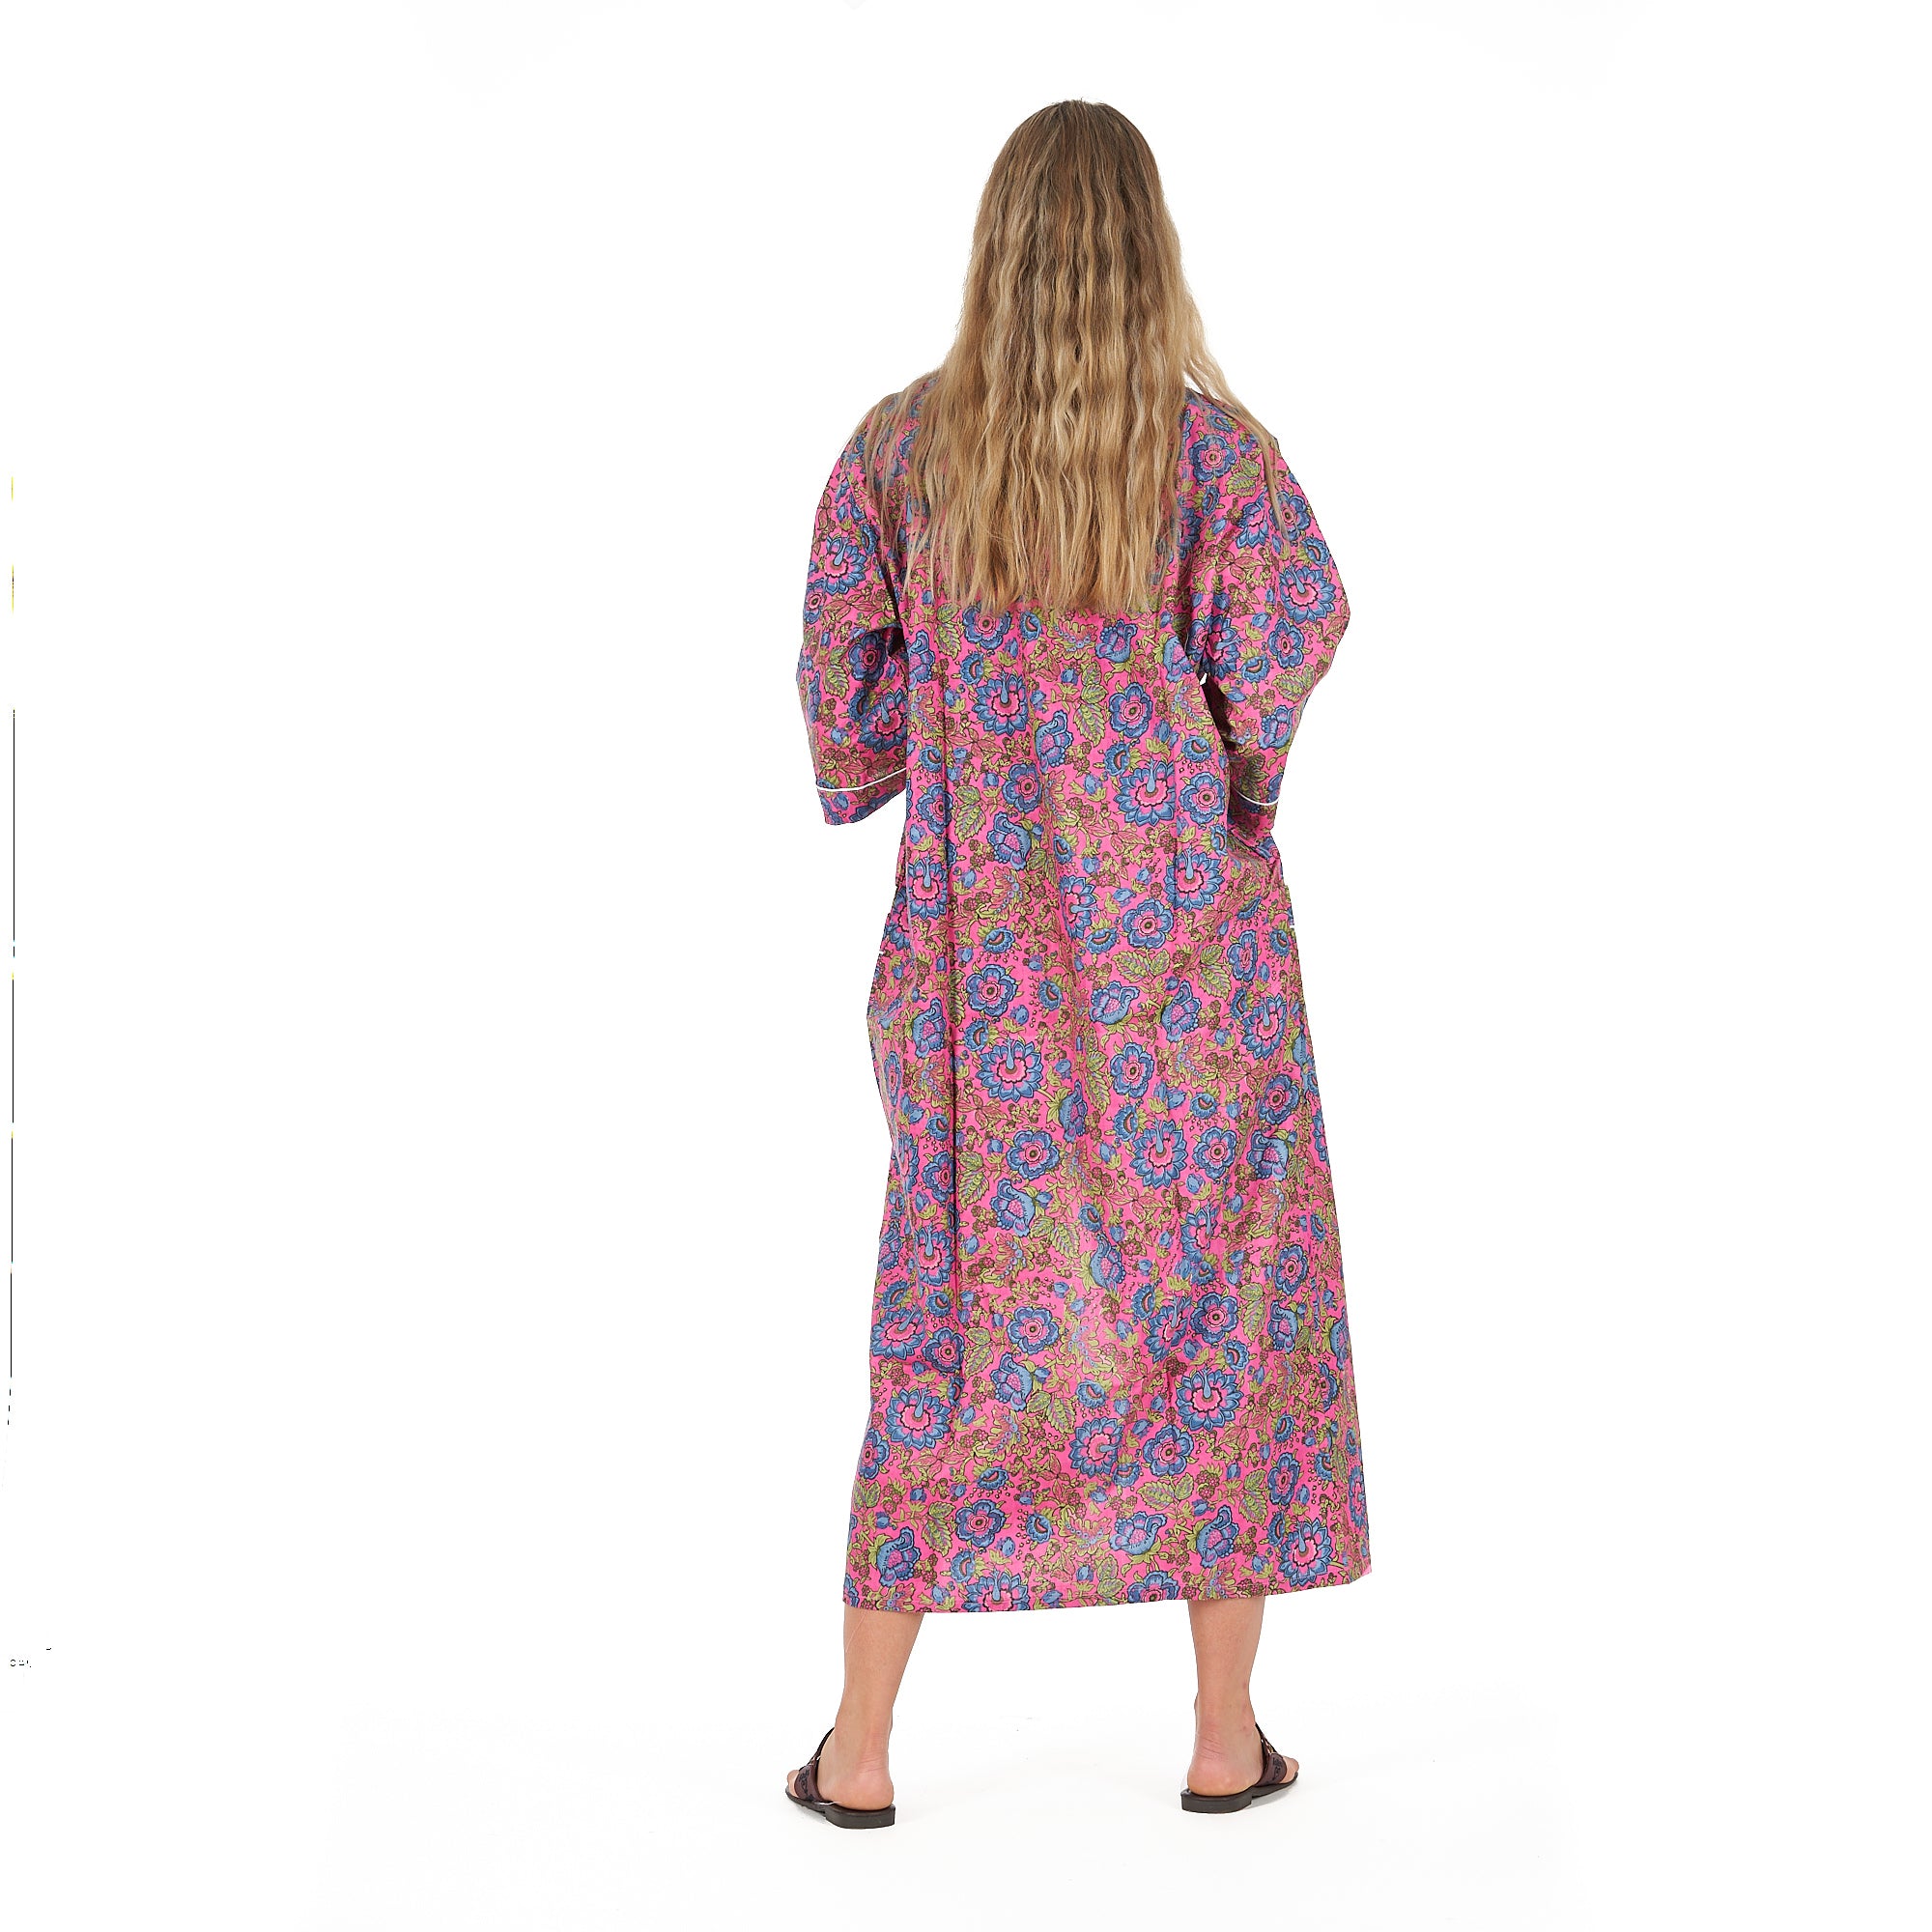 'Floral Euphoria' 100% Cotton Kimono Robe